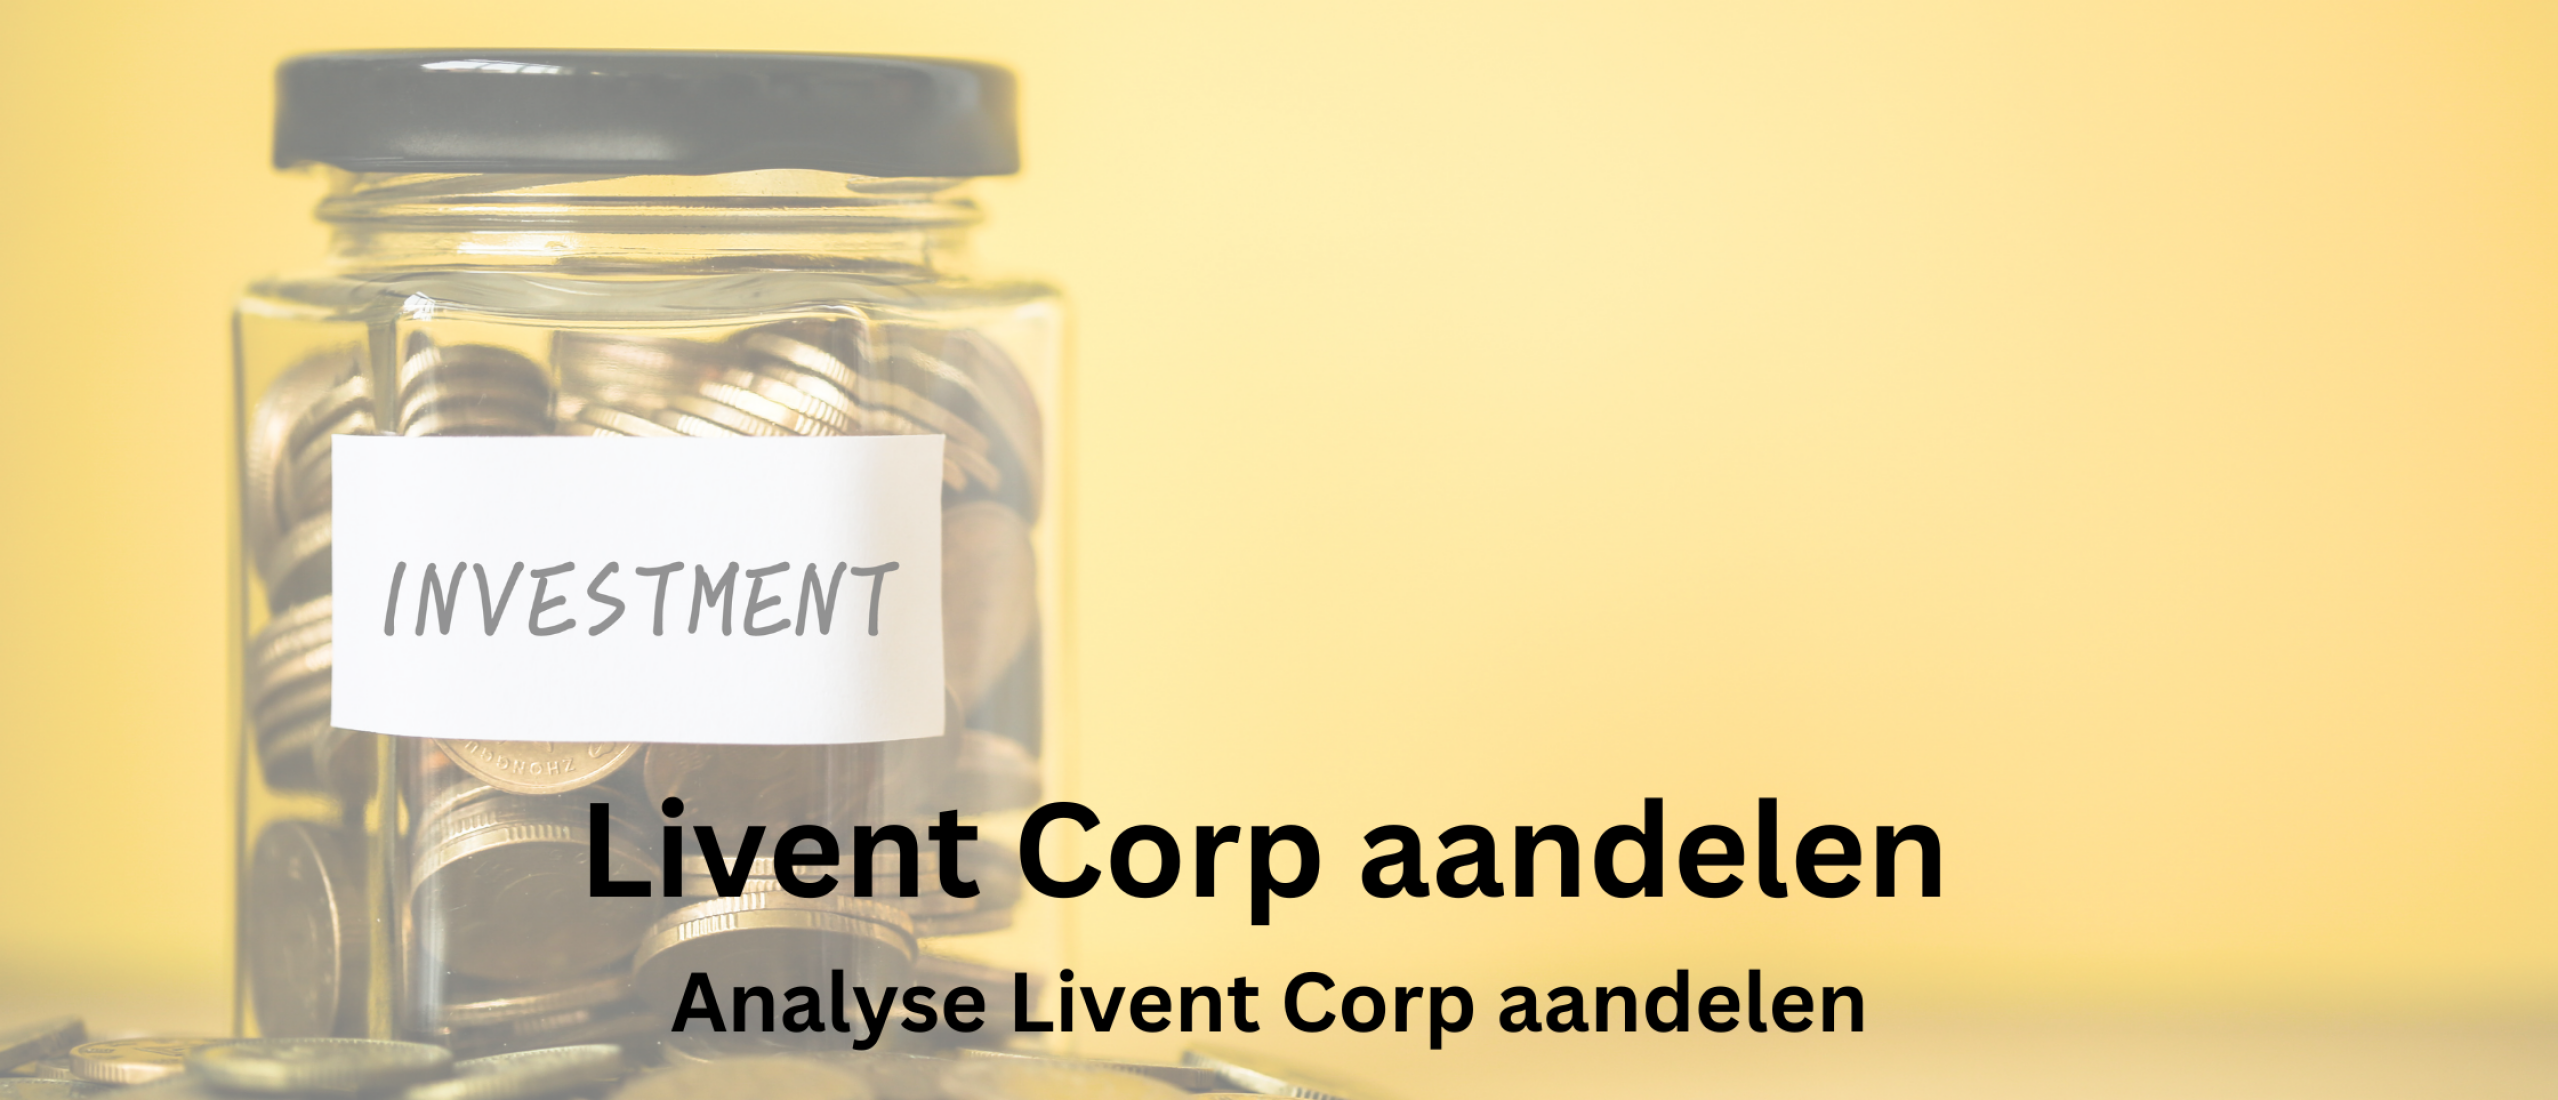 Livent Corporation aandelen kopen? Analyse +56,7% Groei | Happy Investors